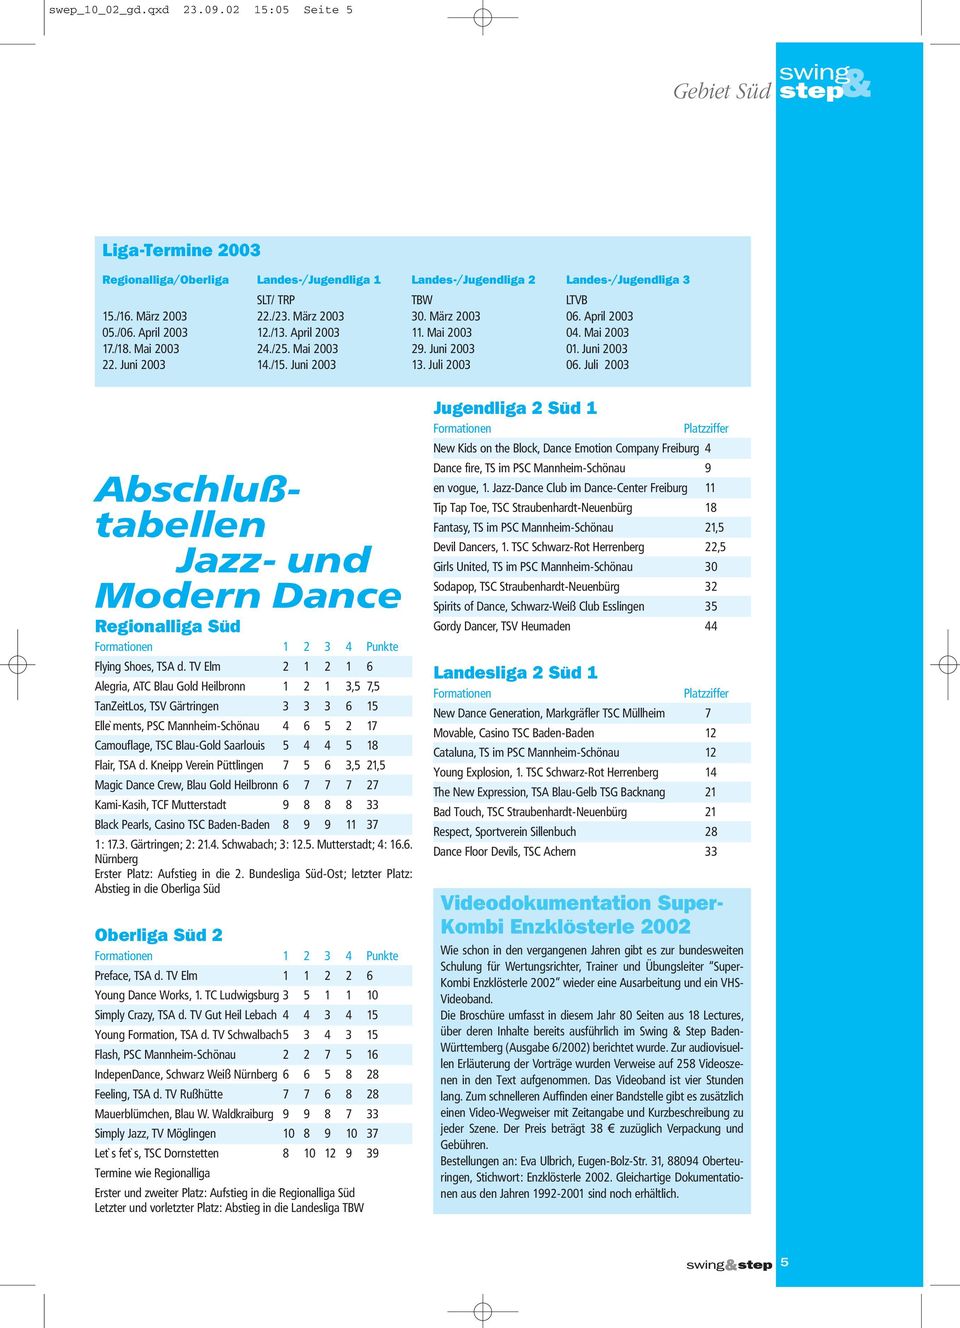 Juli 2003 06. Juli 2003 Abschlußtabellen Jazz- und Modern Dance Regionalliga Süd Formationen 1 2 3 4 Punkte Flying Shoes, TSA d.